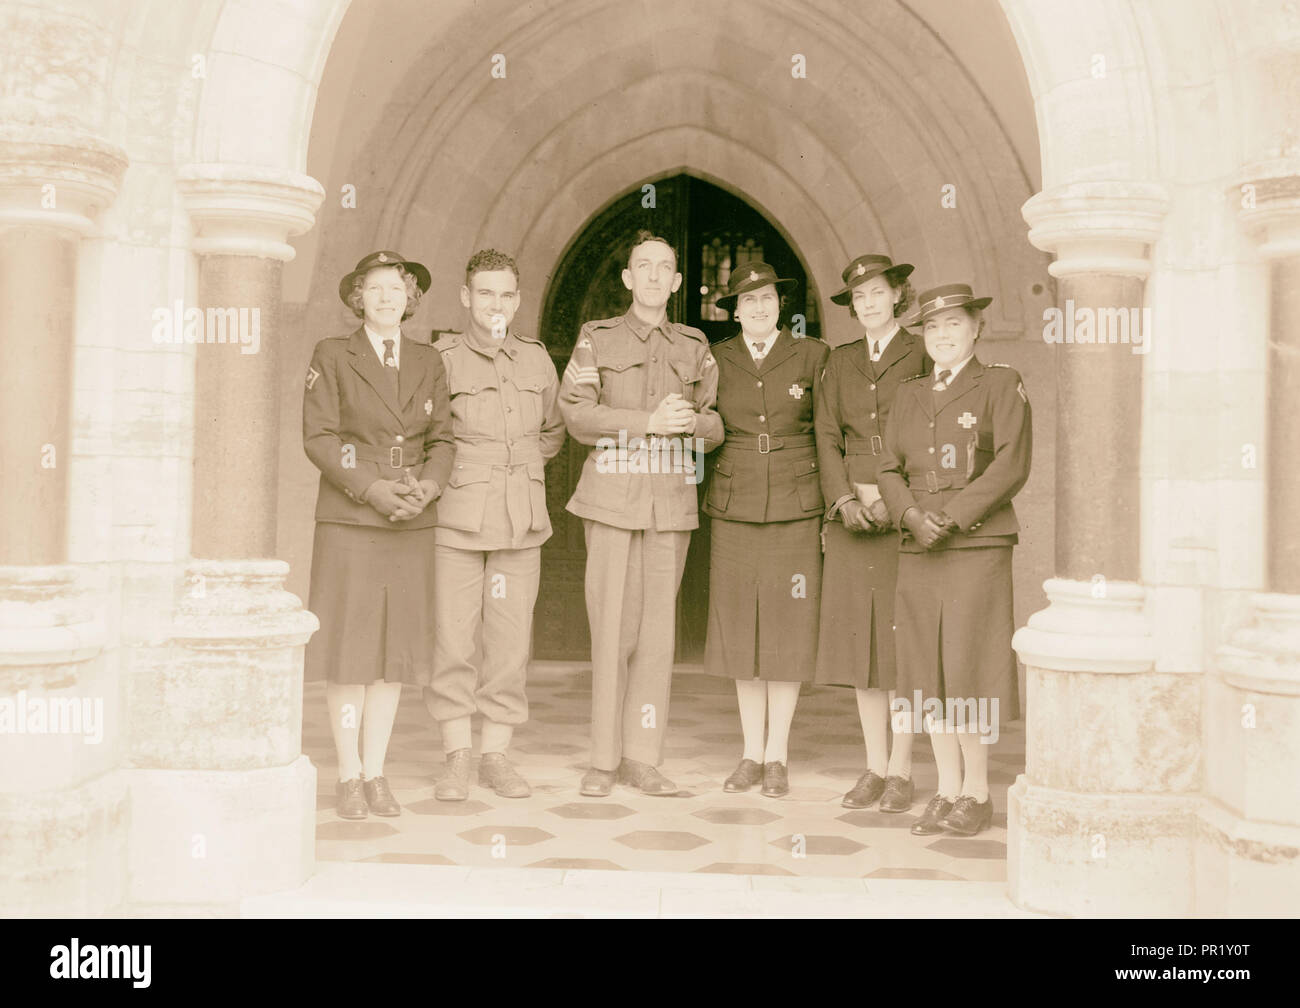 Hochzeit Gruppe von St. George's. Sgt. Braun (Australische). 1940, Jerusalem, Israel Stockfoto